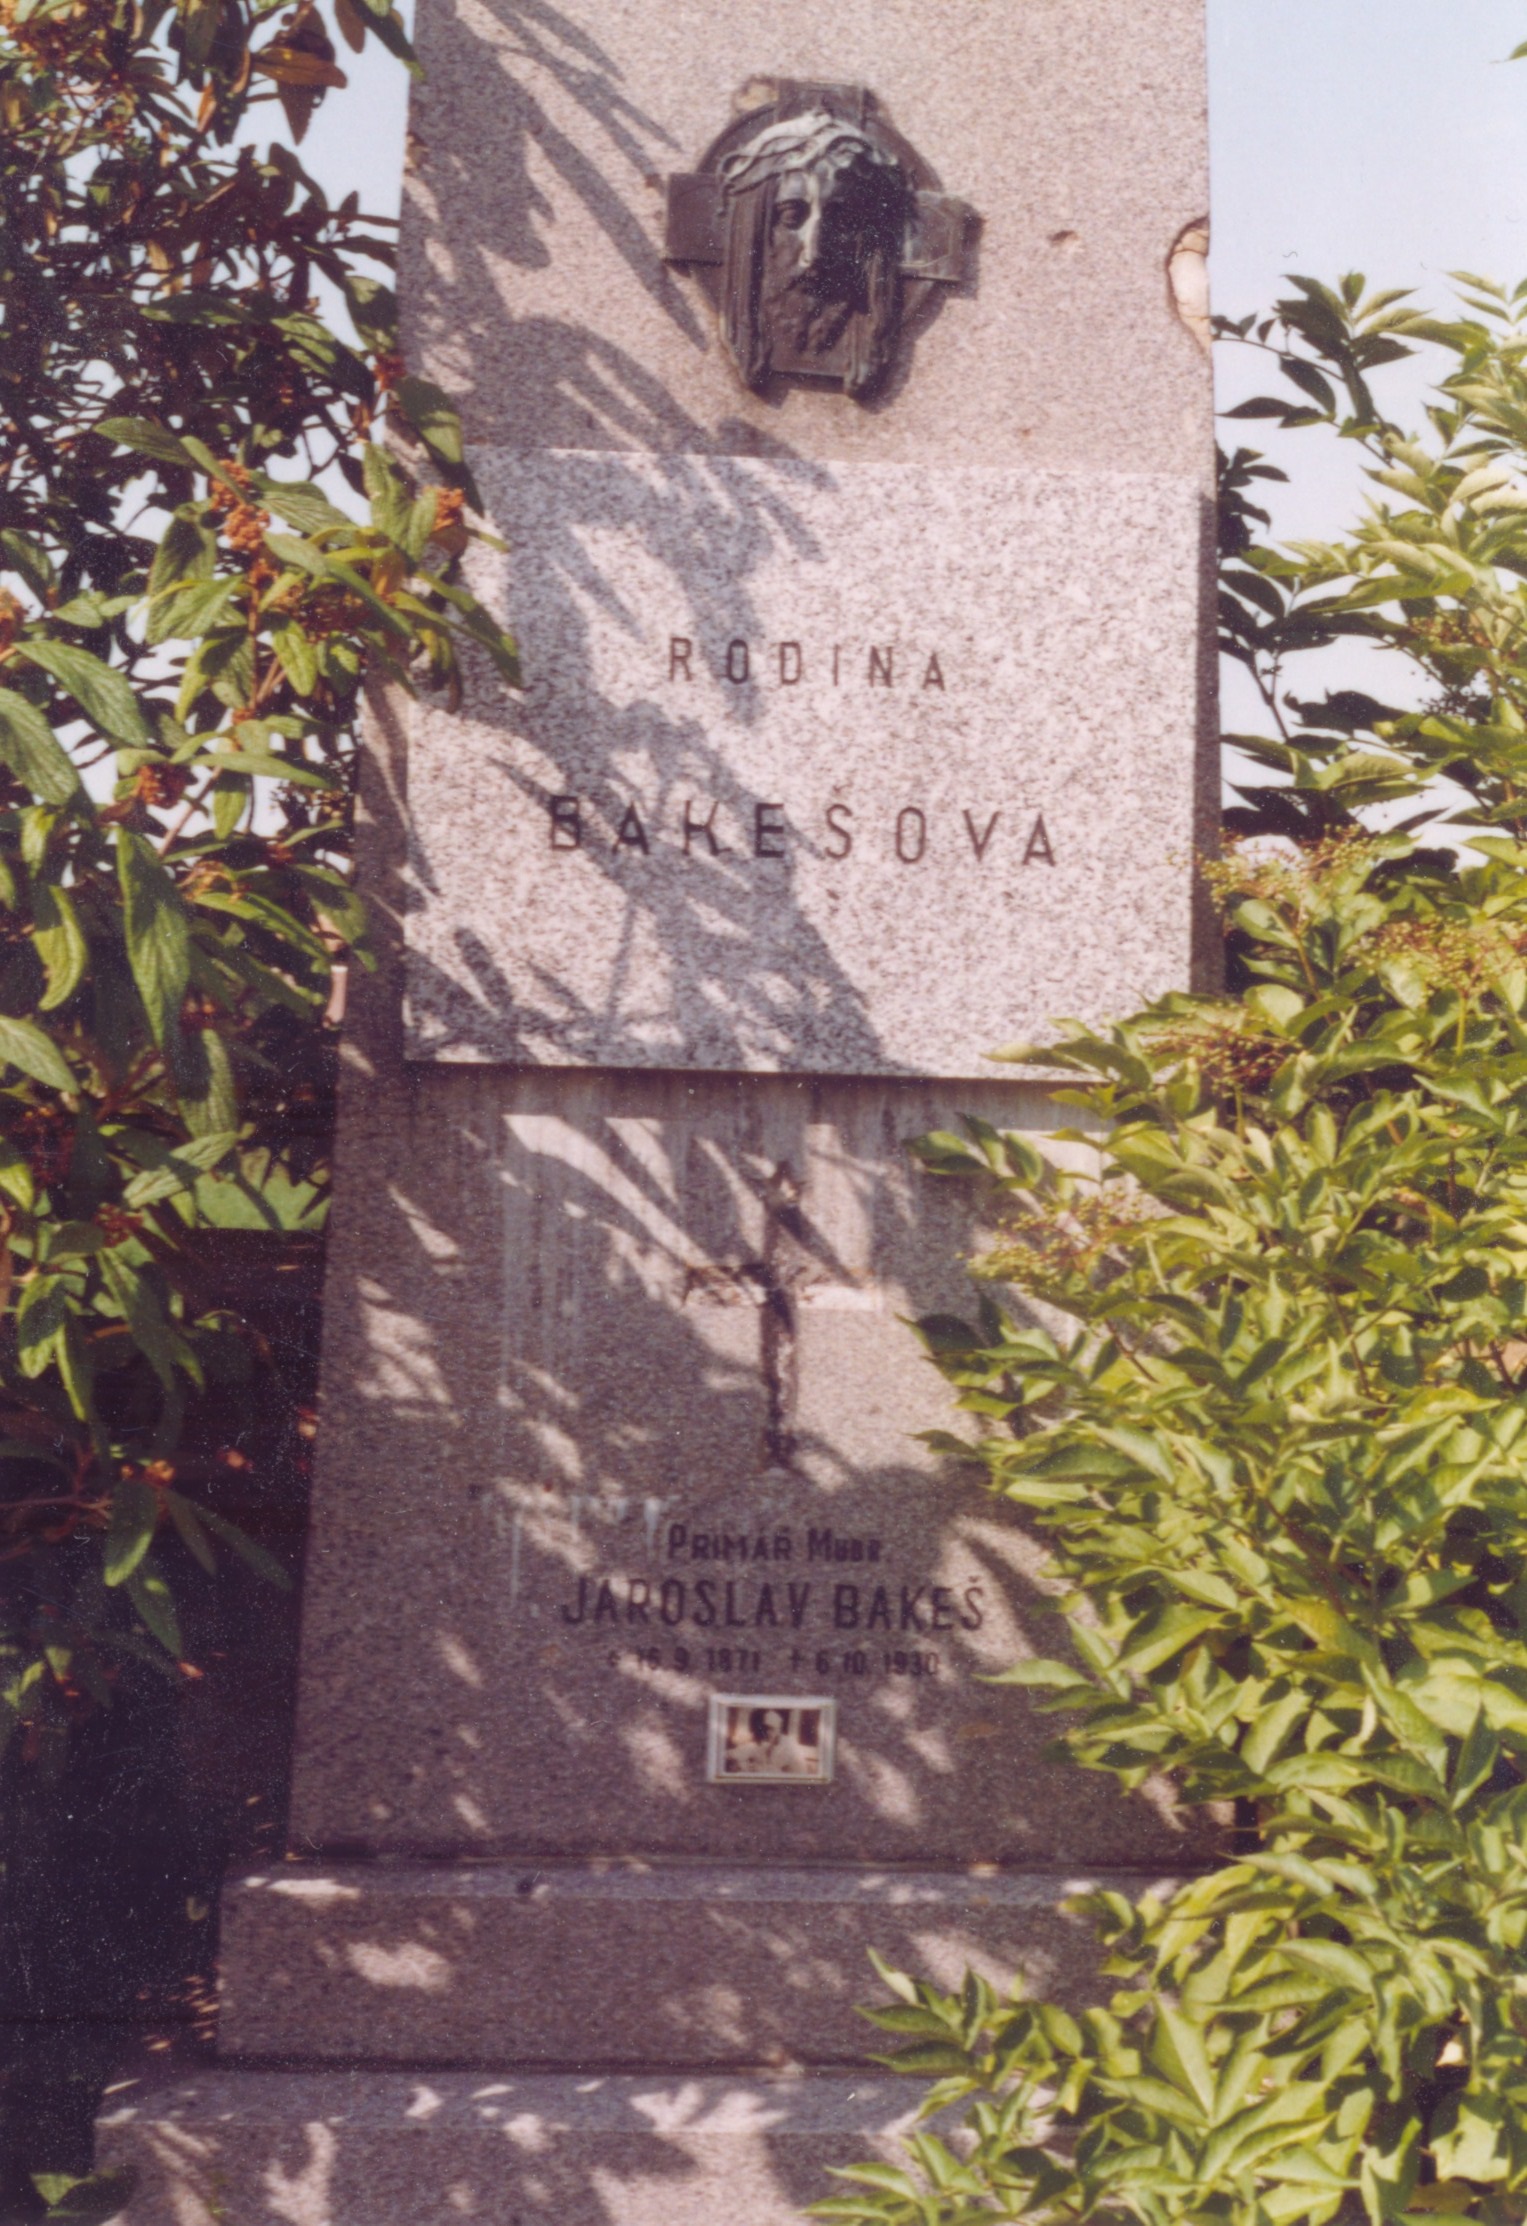 Rodinný hrob Bakešů na místním hřbitově v Ořechově u Brna